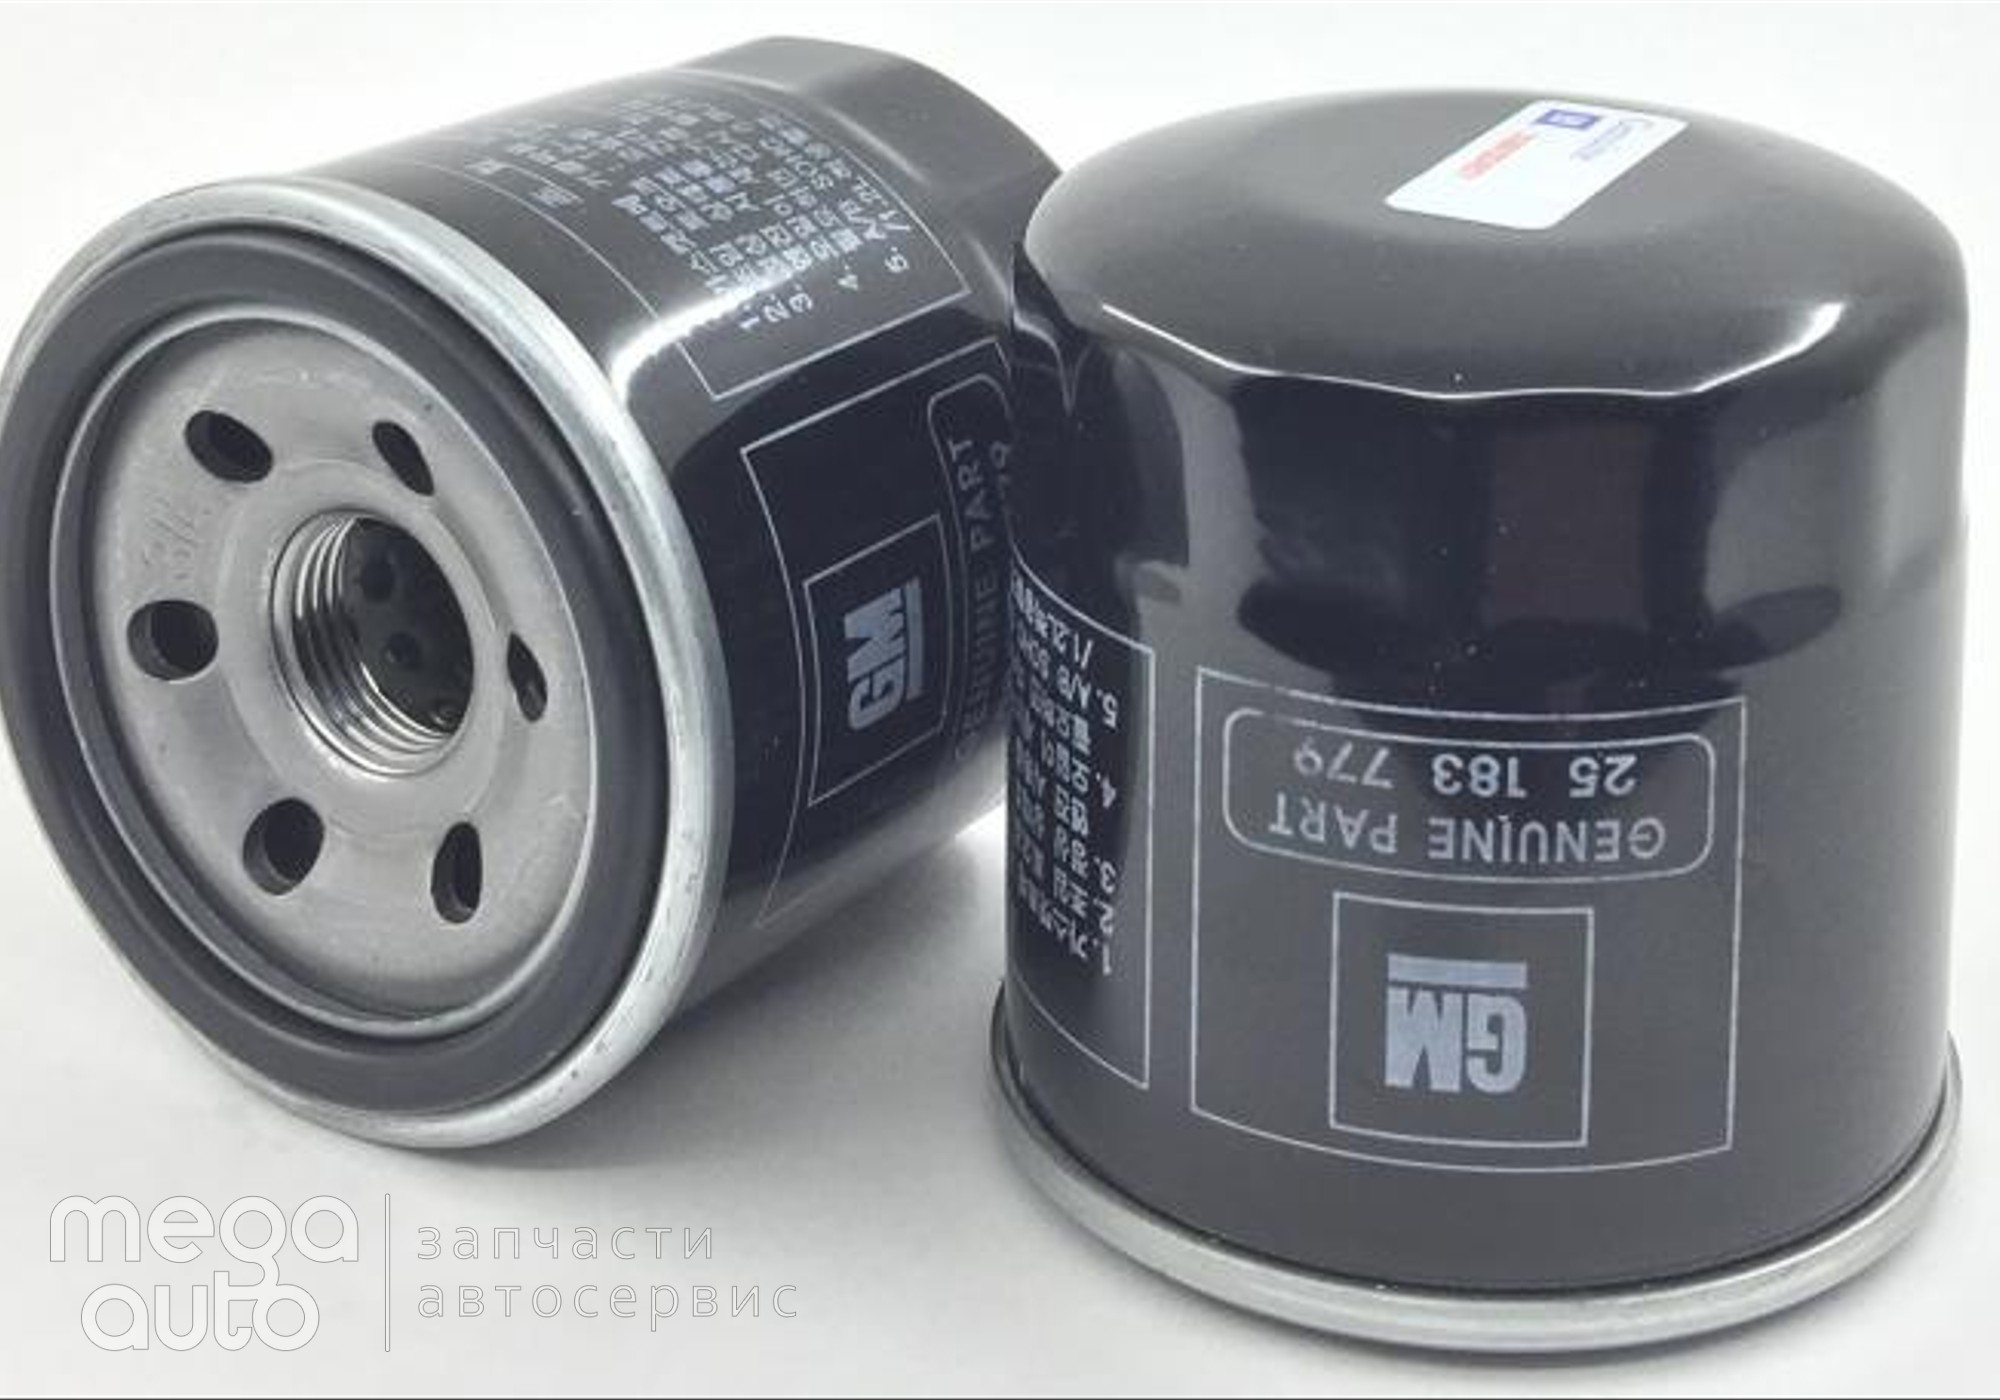 25183779 Масляный фильтр шевроле, део, сузуки(GM) для Volkswagen Golf I (с 1979 по 1993)